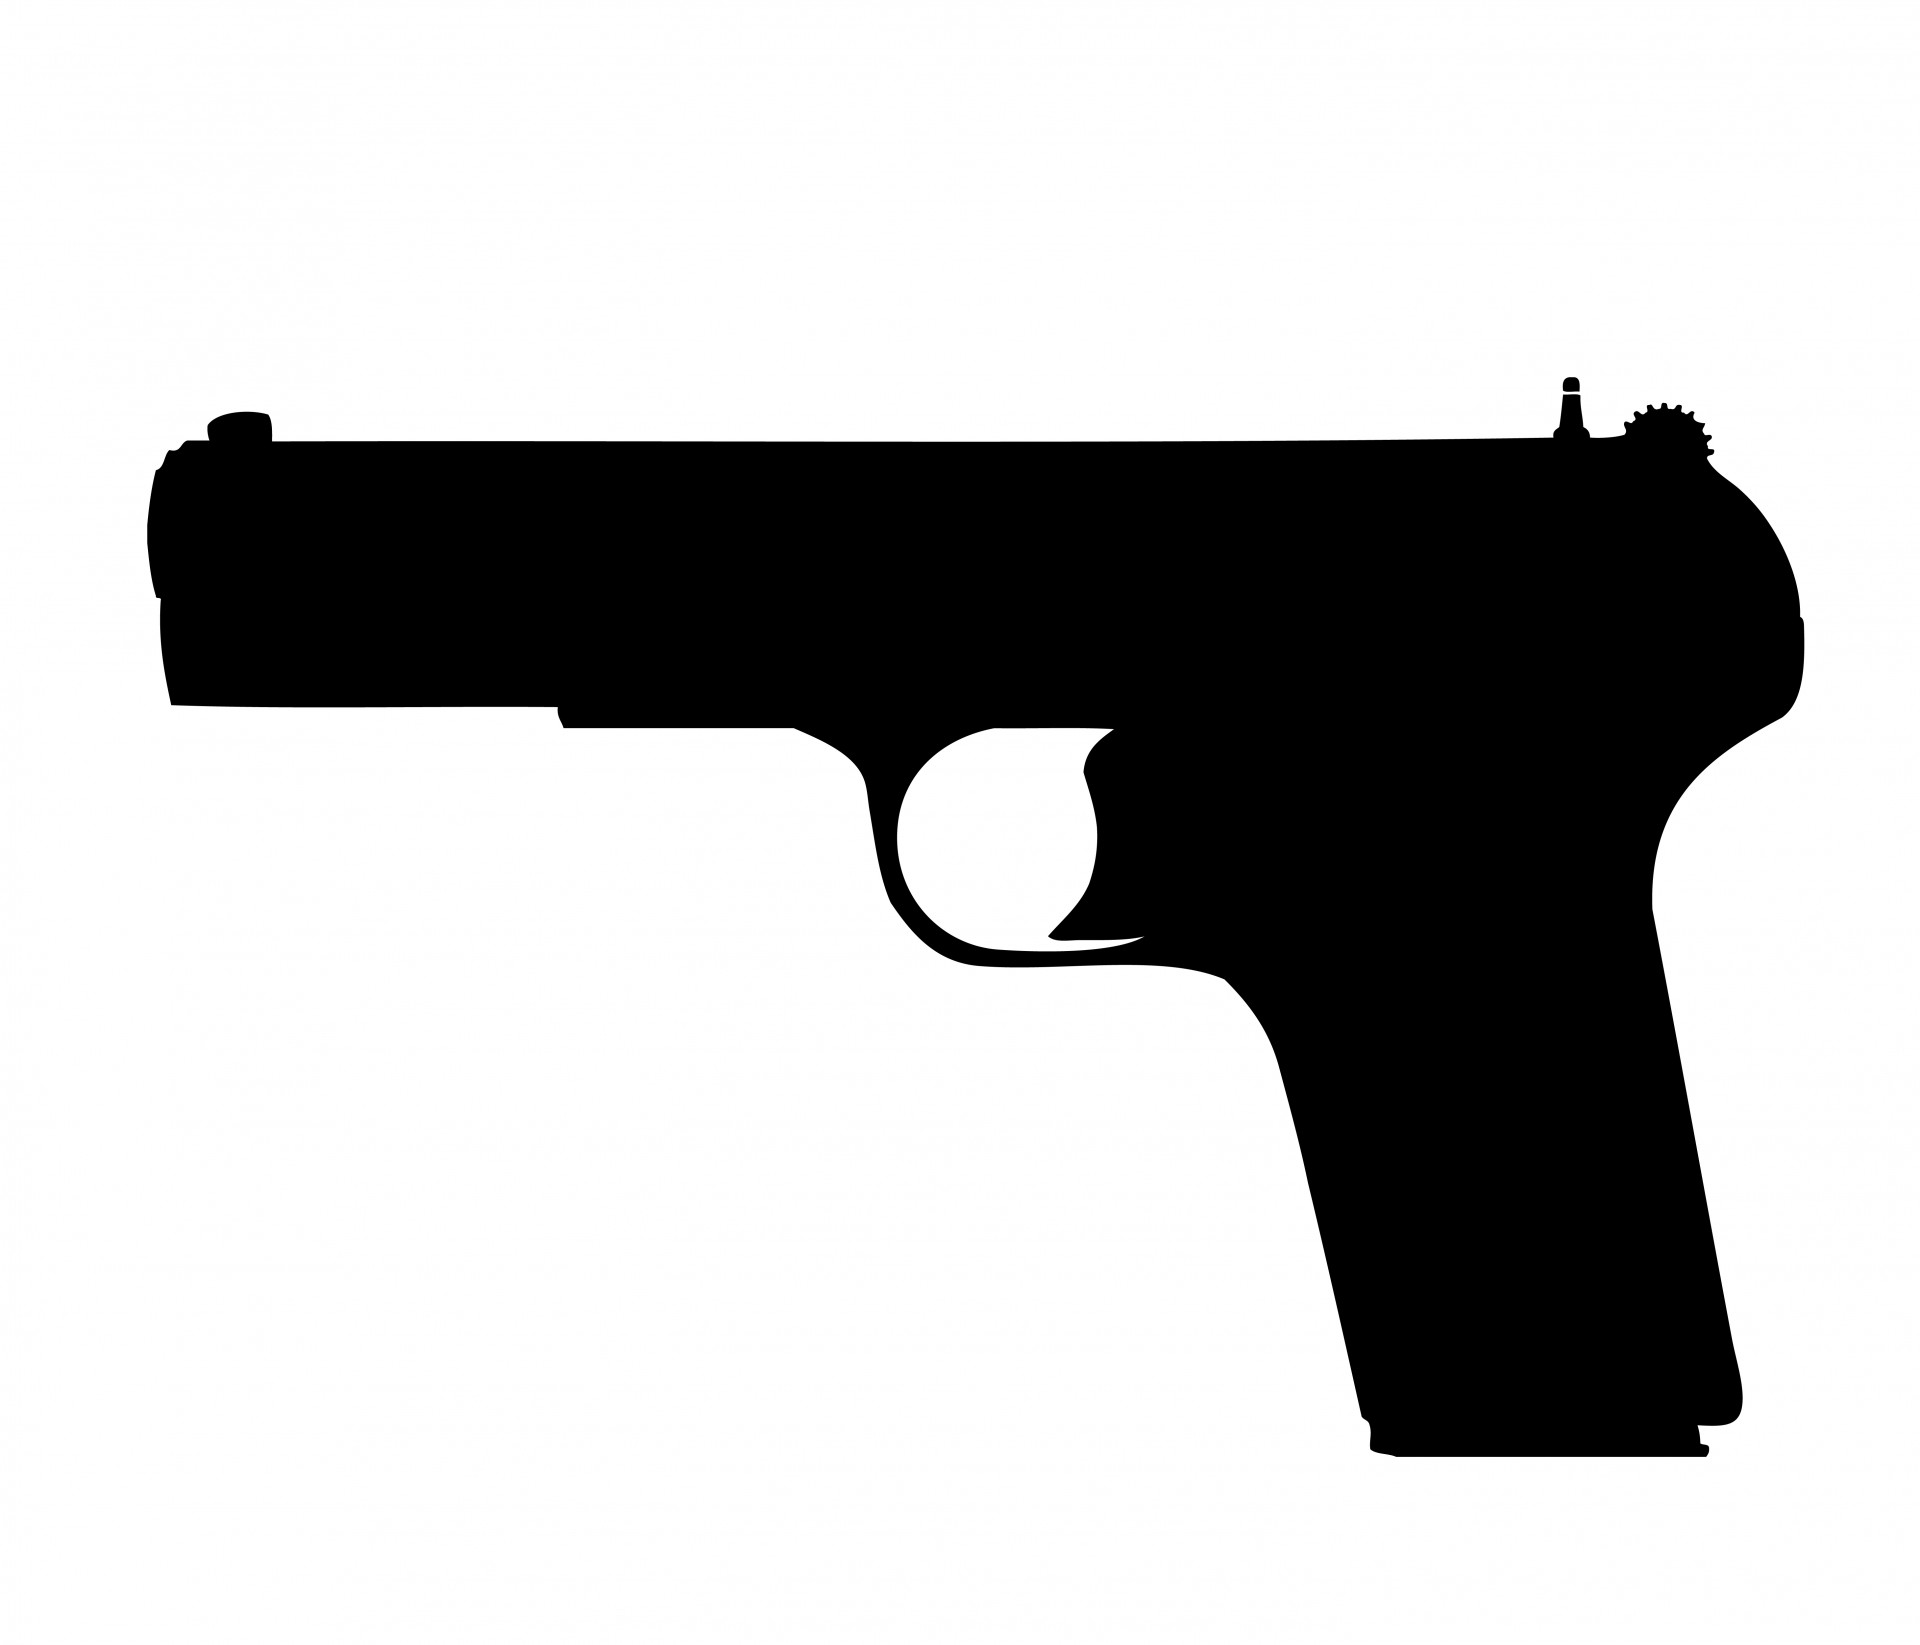 Pistol Police officer Firearm Weapon